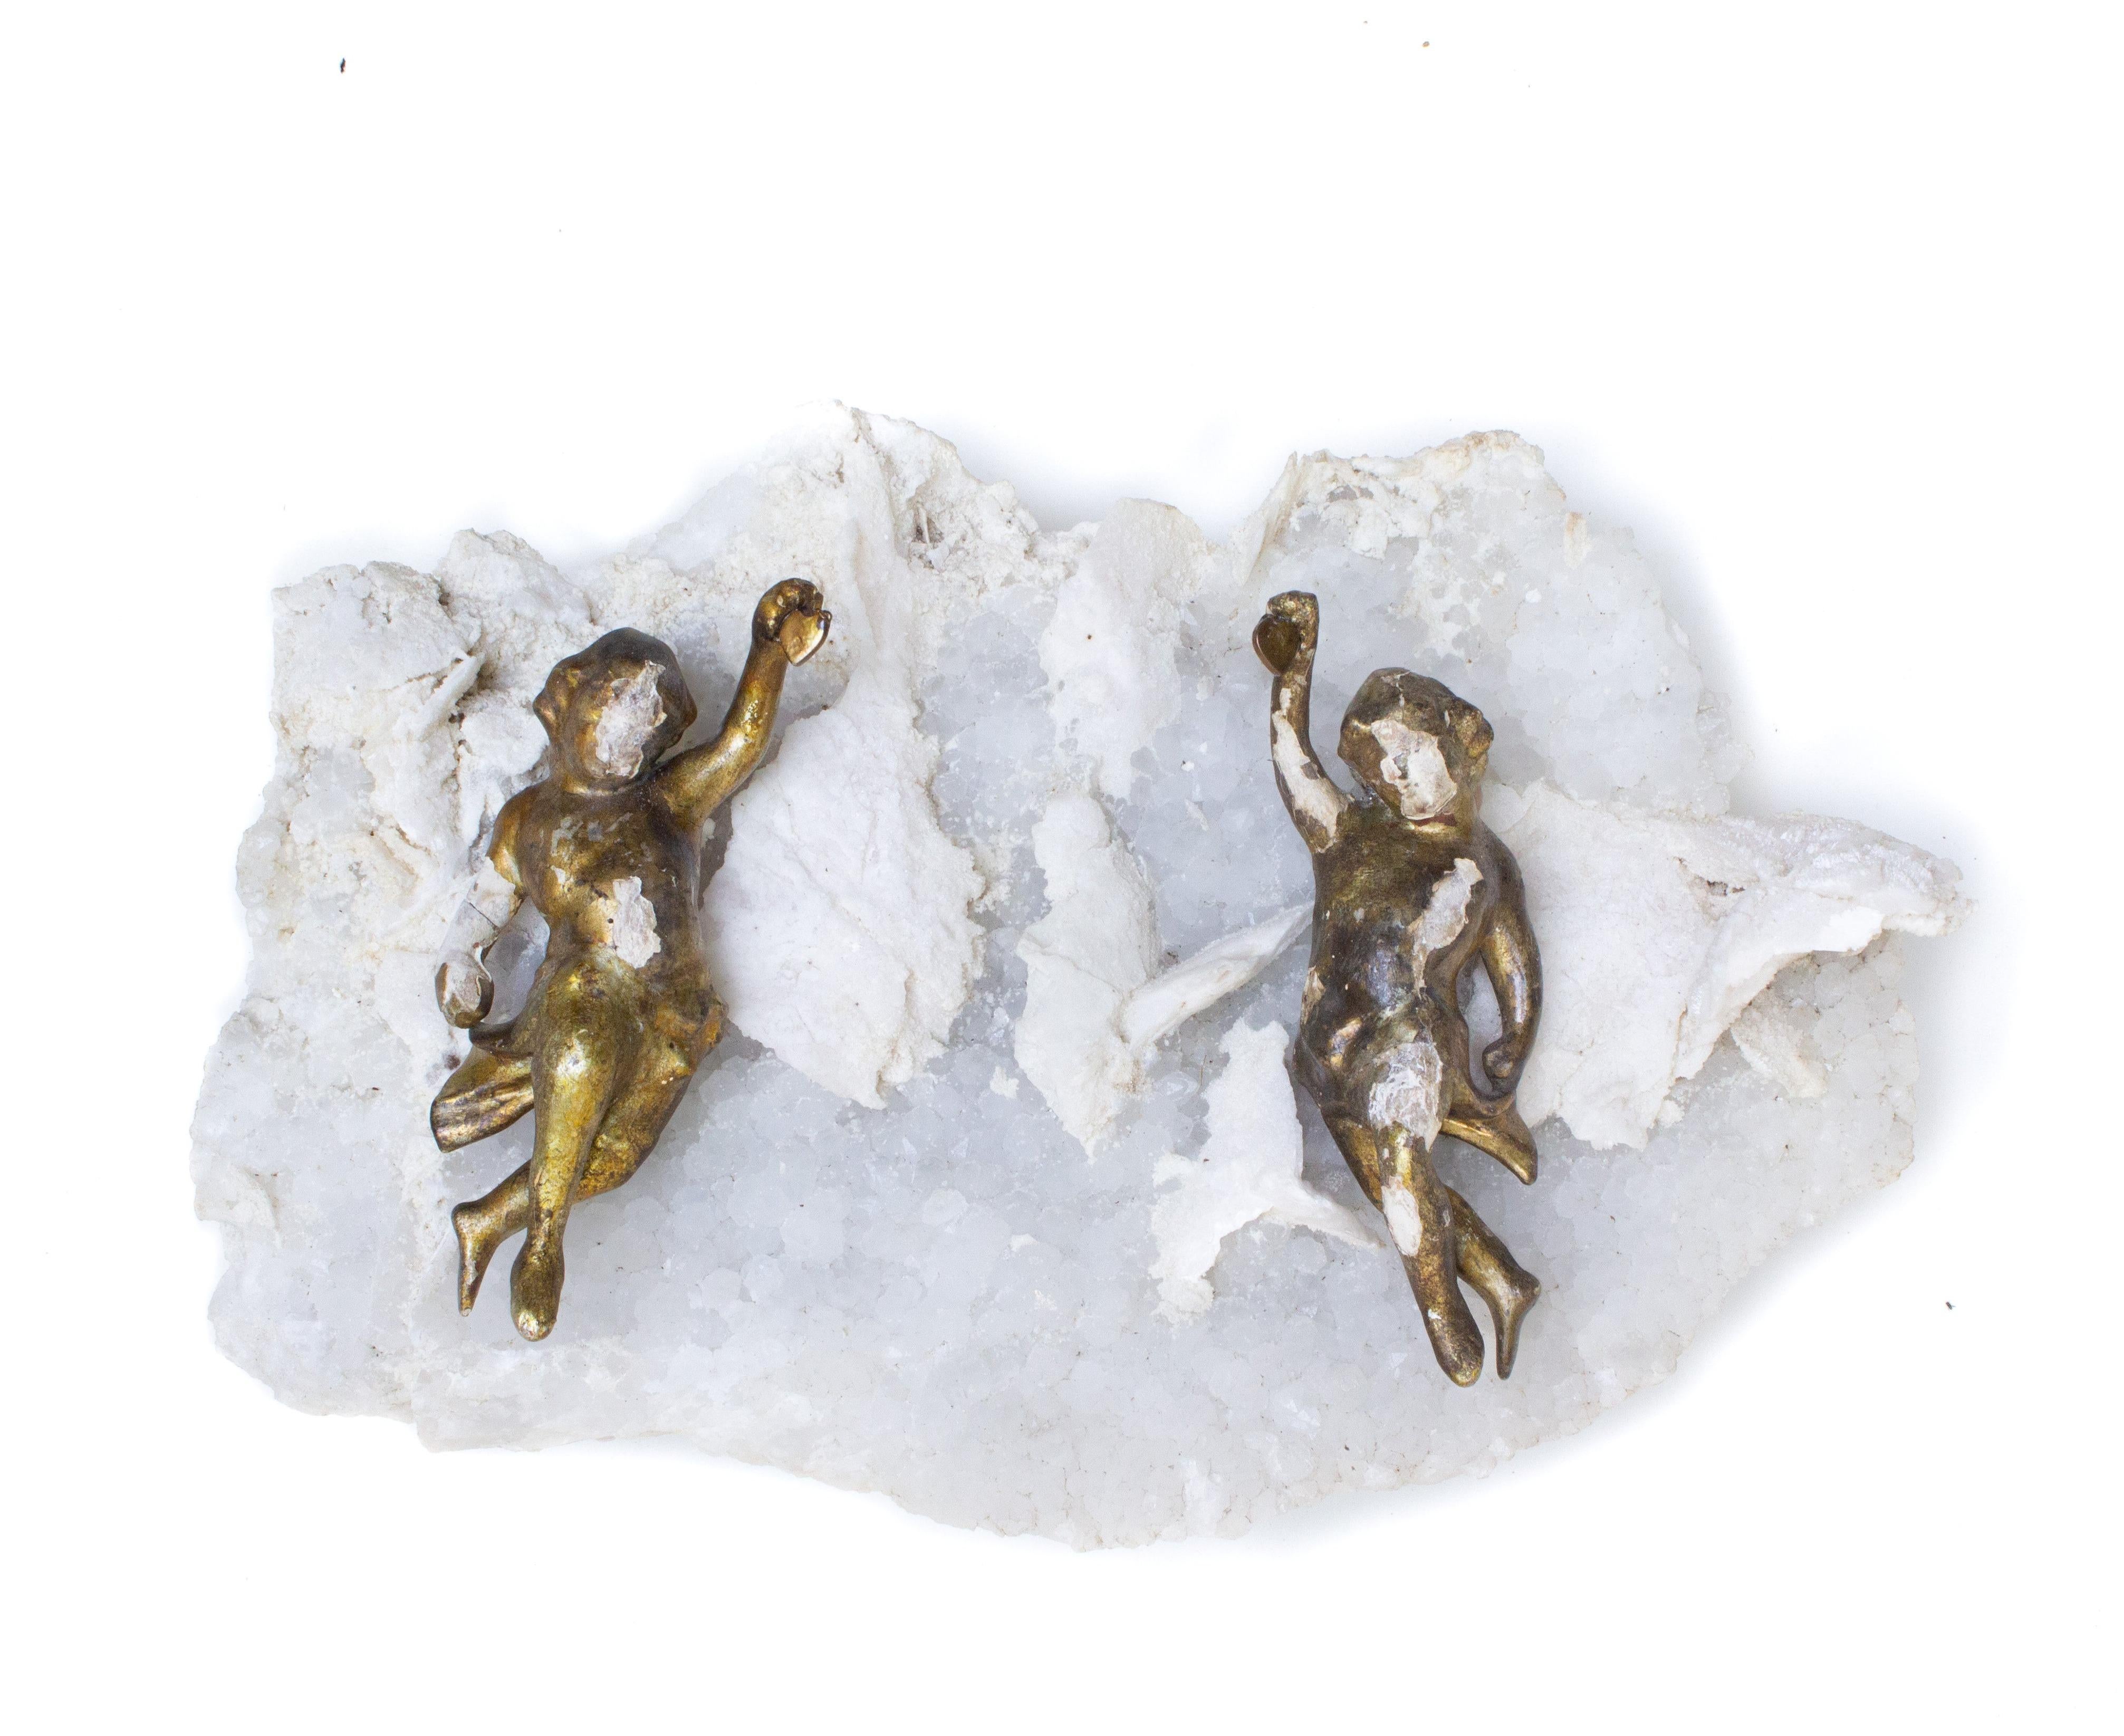 Paire d'anges italiens du XVIIIe siècle sculptés à la main à la feuille d'or et montés sur de l'améthyste et de la calcite en matrice. Les anges sculptés à la main faisaient autrefois partie d'une représentation céleste et angélique dans une église